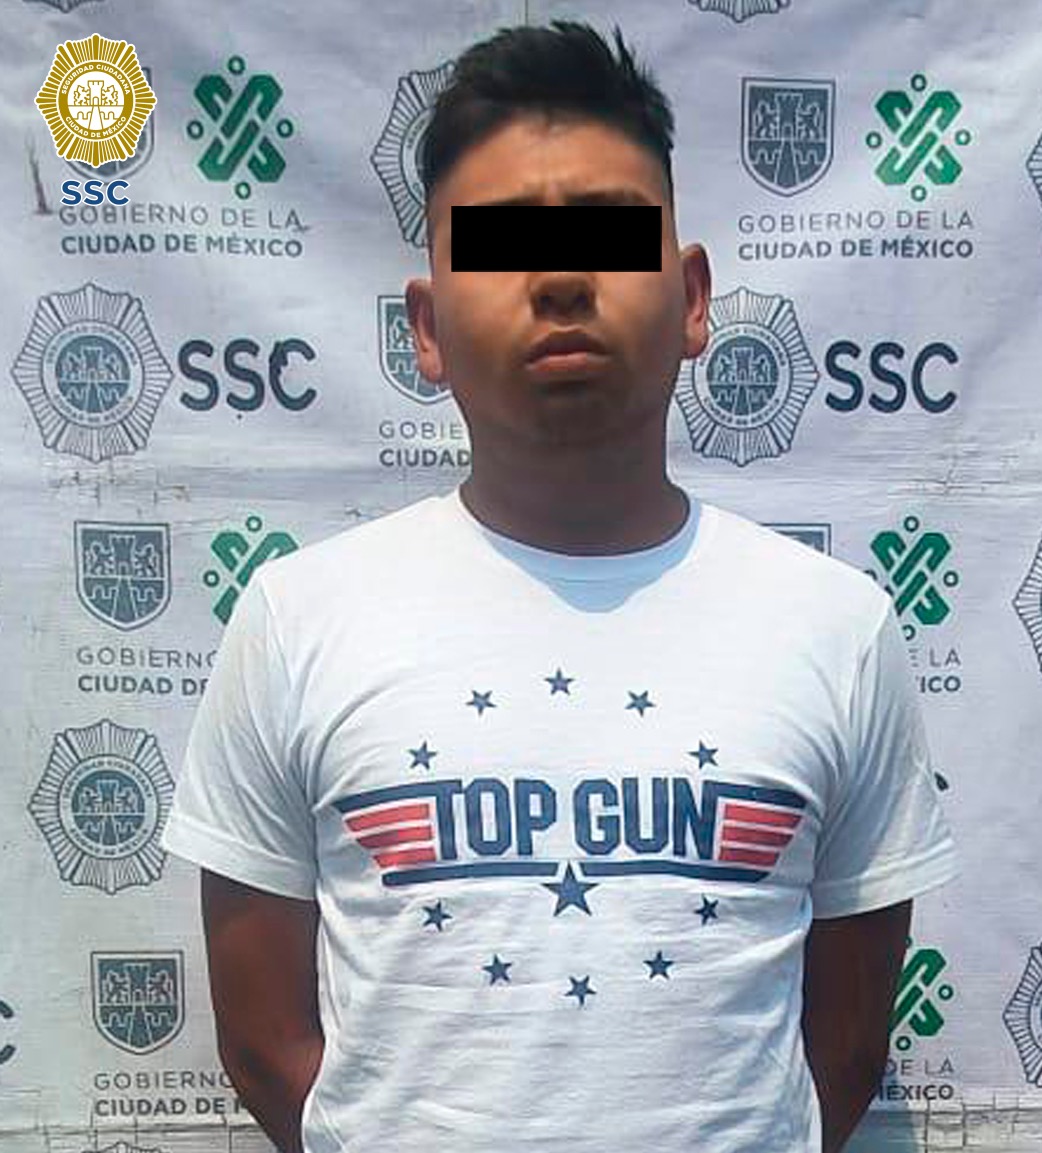 En atención a una denuncia ciudadana realizada en redes sociales, personal de la SSC detuvo a tres personas que al parecer comercializaban aparente droga en la alcaldía Tláhuac